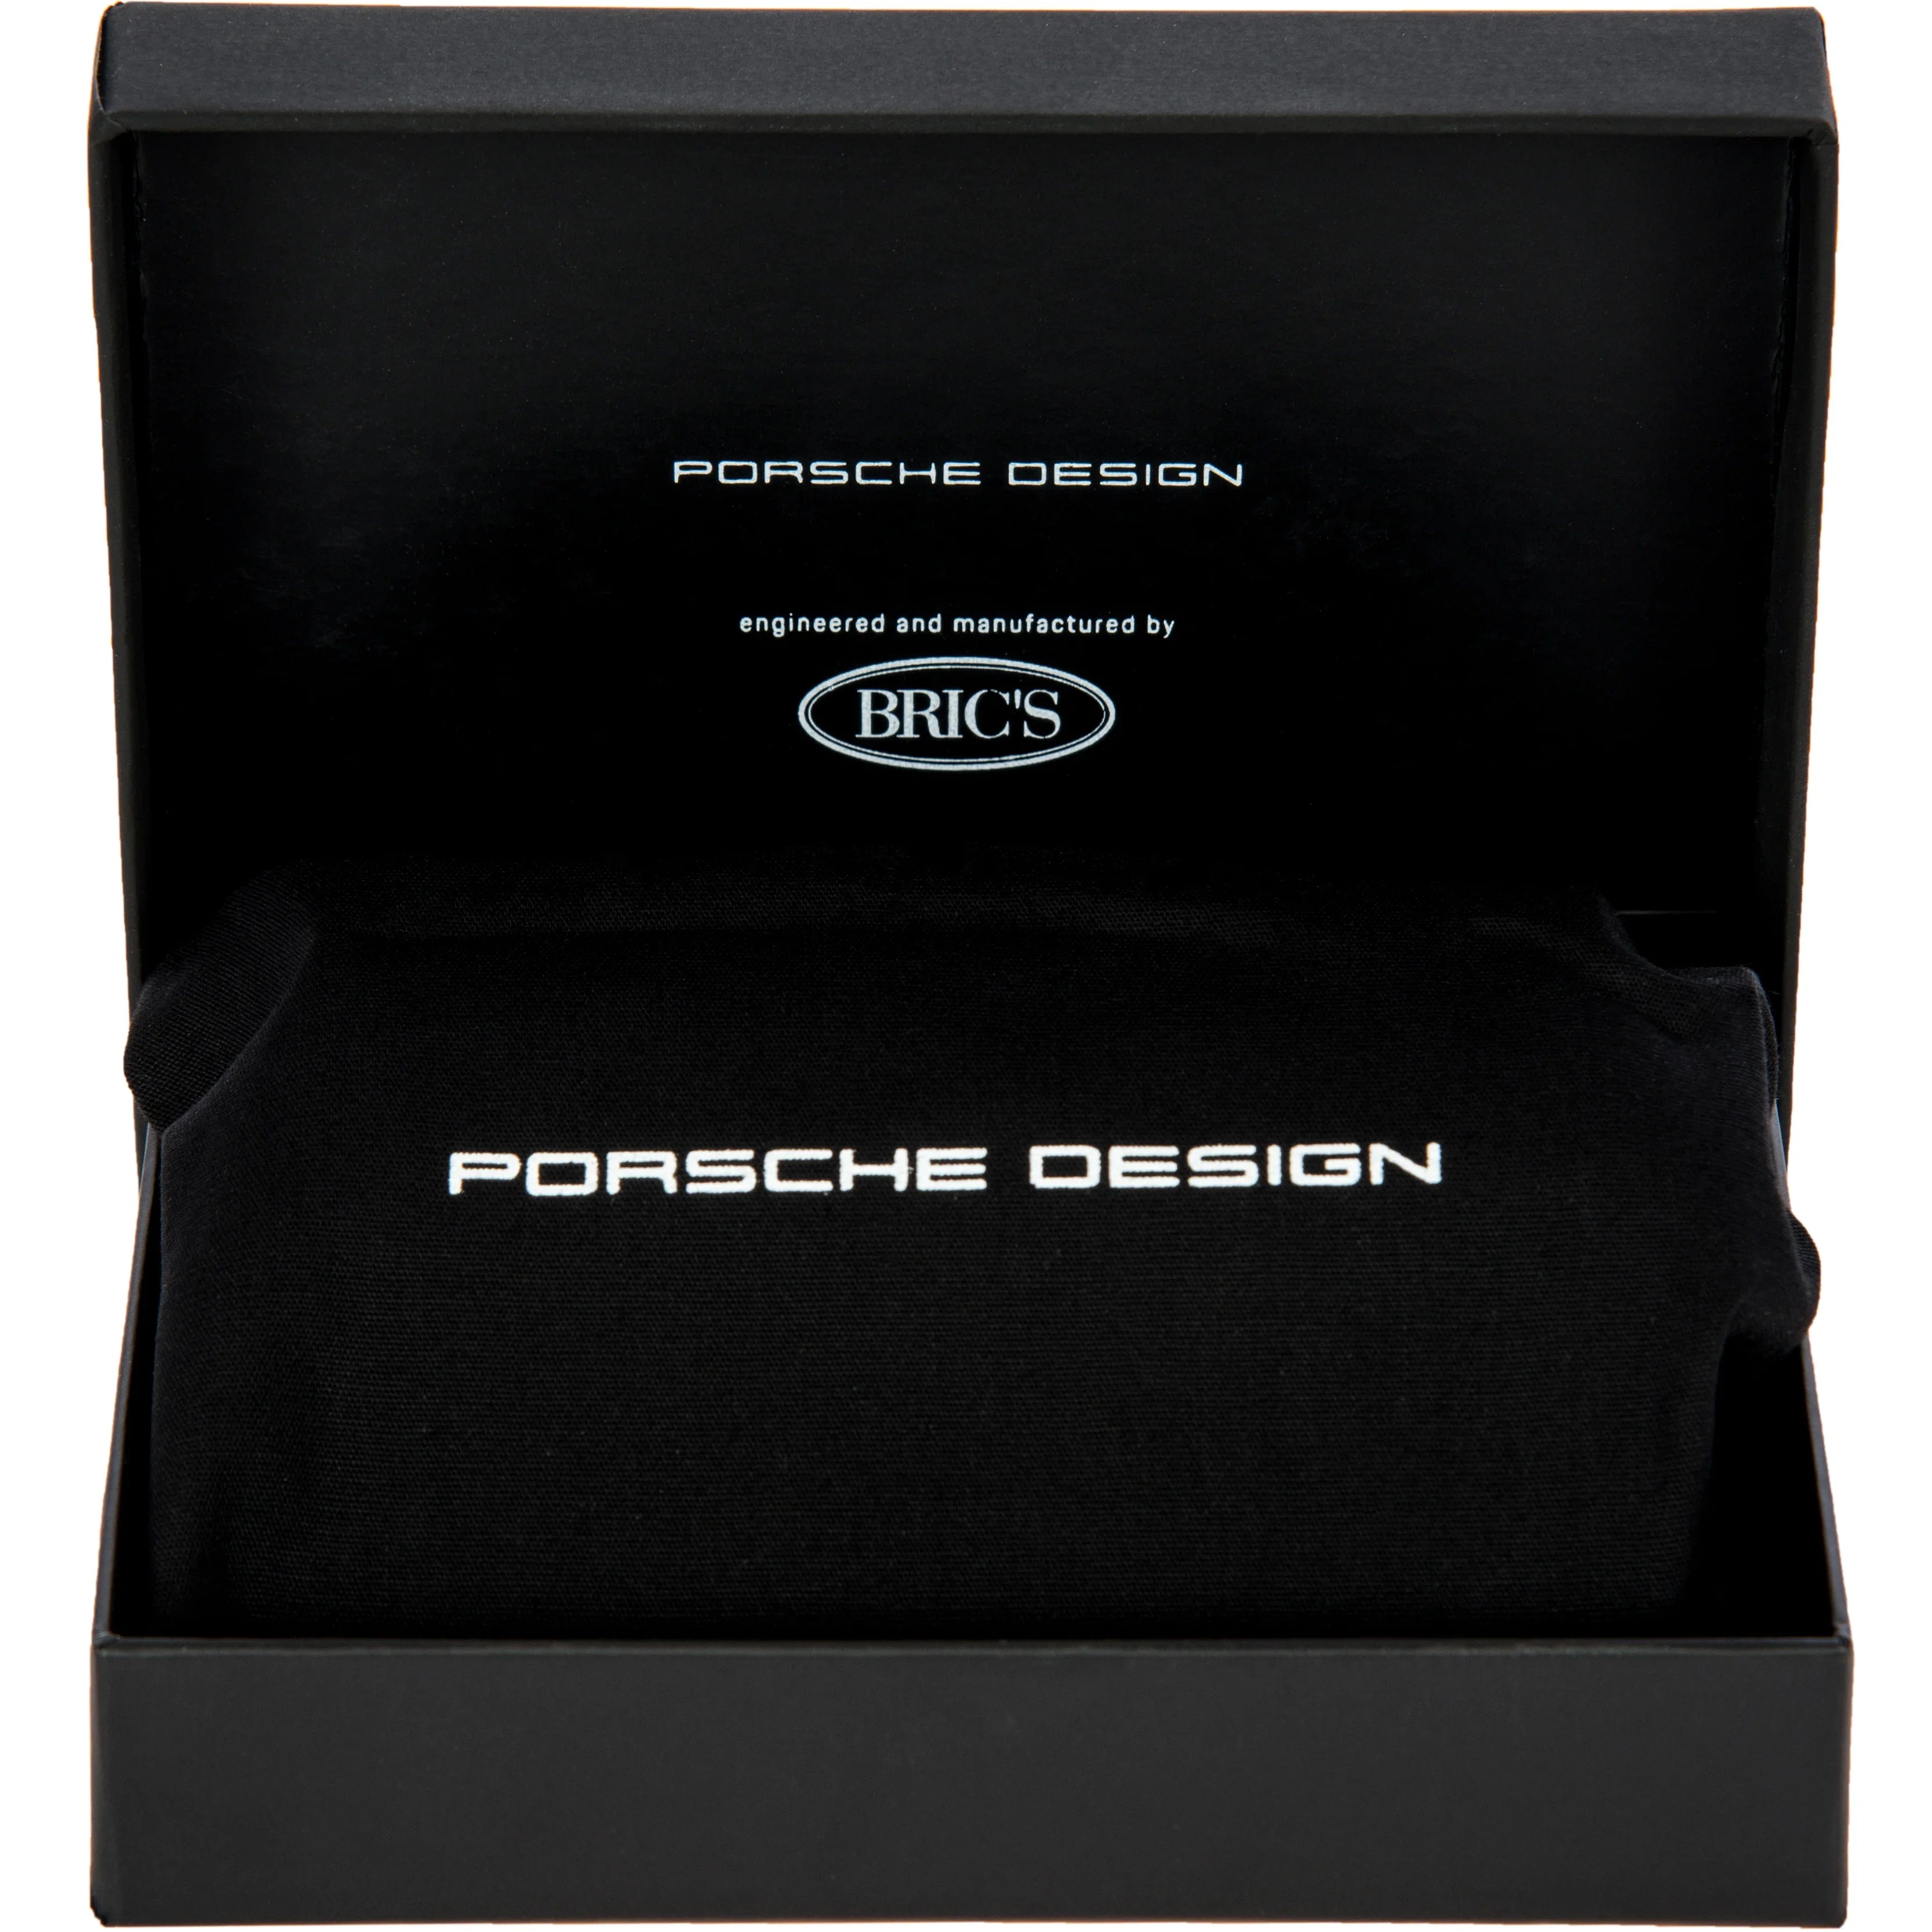 Porsche Design X Secrid Card Holder 10 cm - White